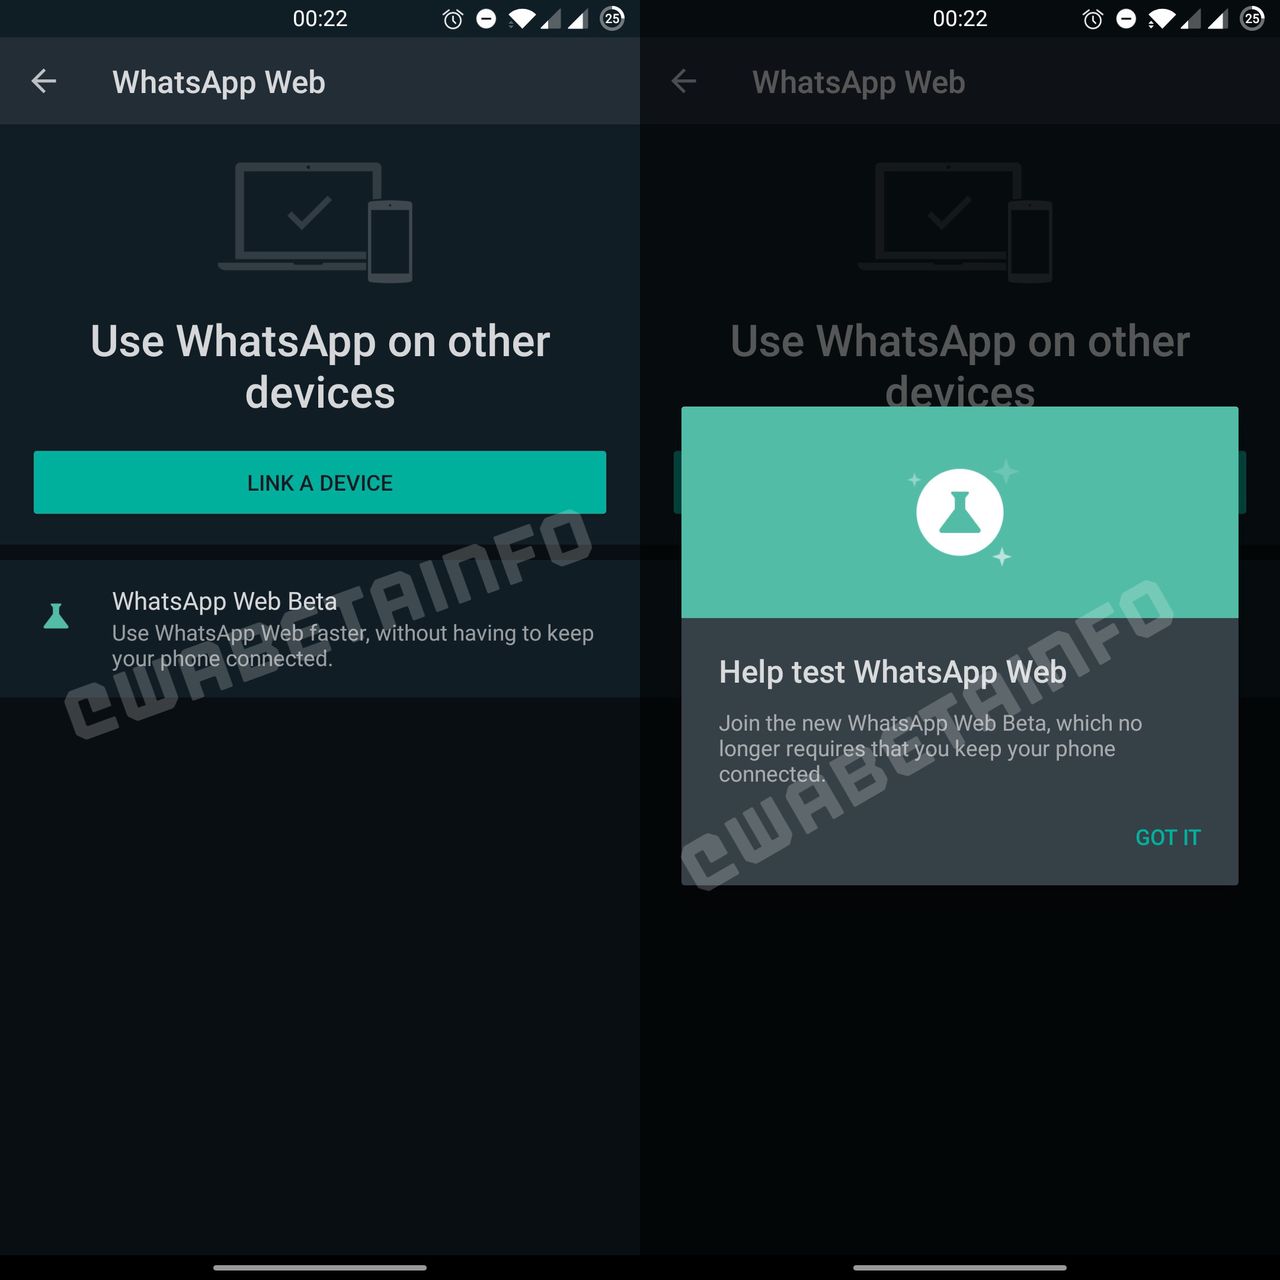 Zachęta do testowania WhatsAppa na kilku urządzeniach – jeszcze nieaktywna, fot. WABetaInfo.